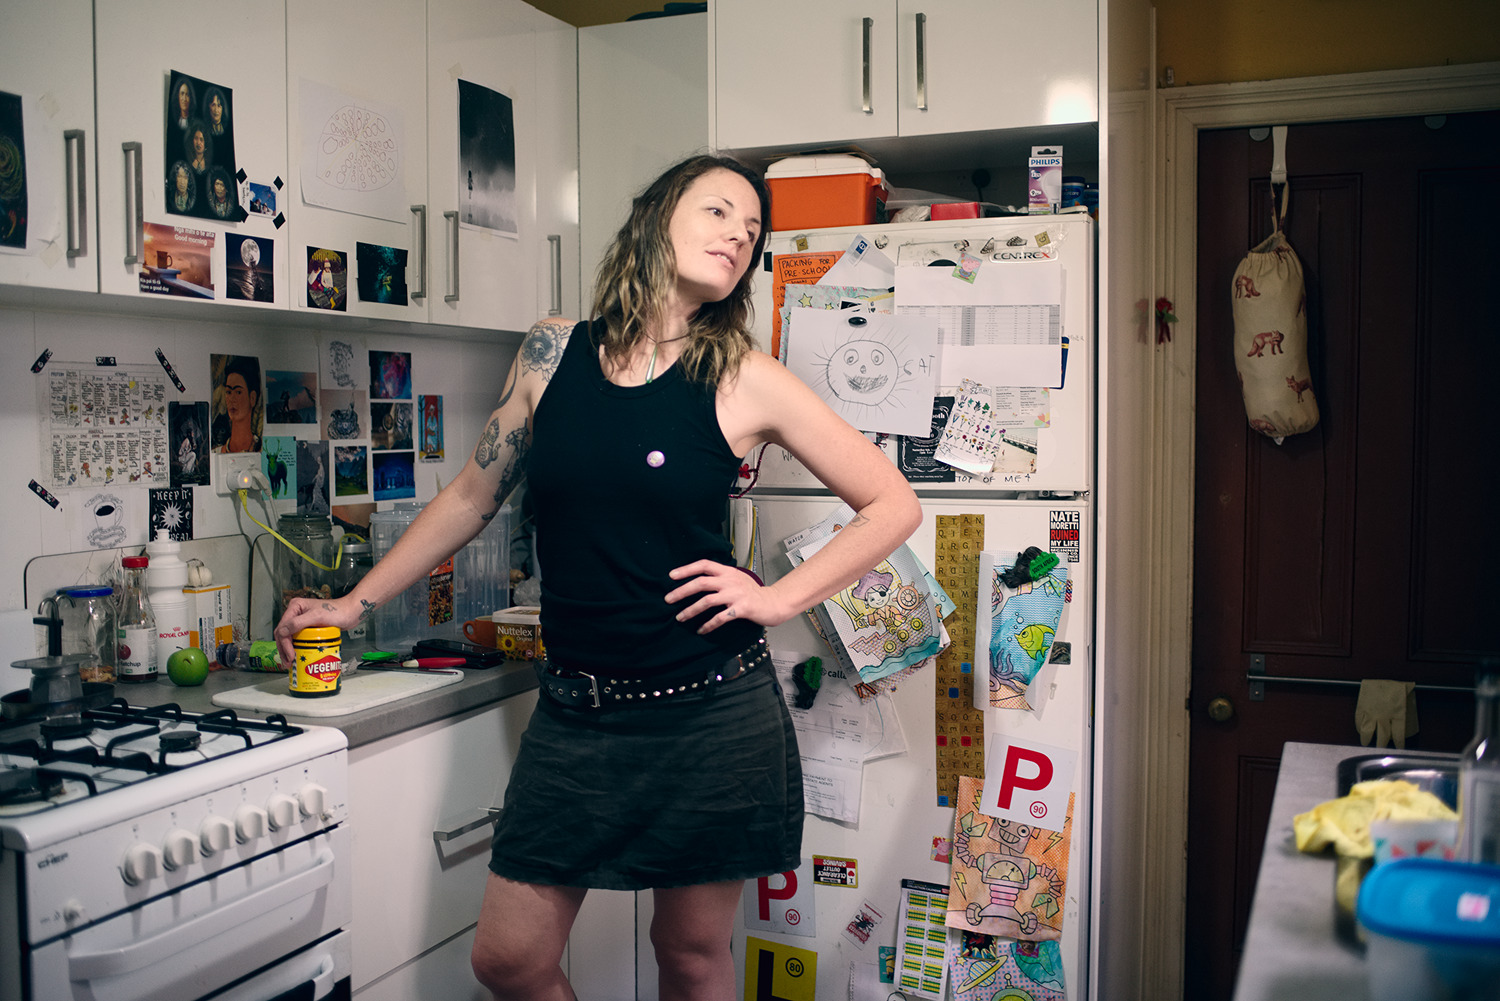 Kallie in her kitchen, vocals in Thorax, Sydney, 2016